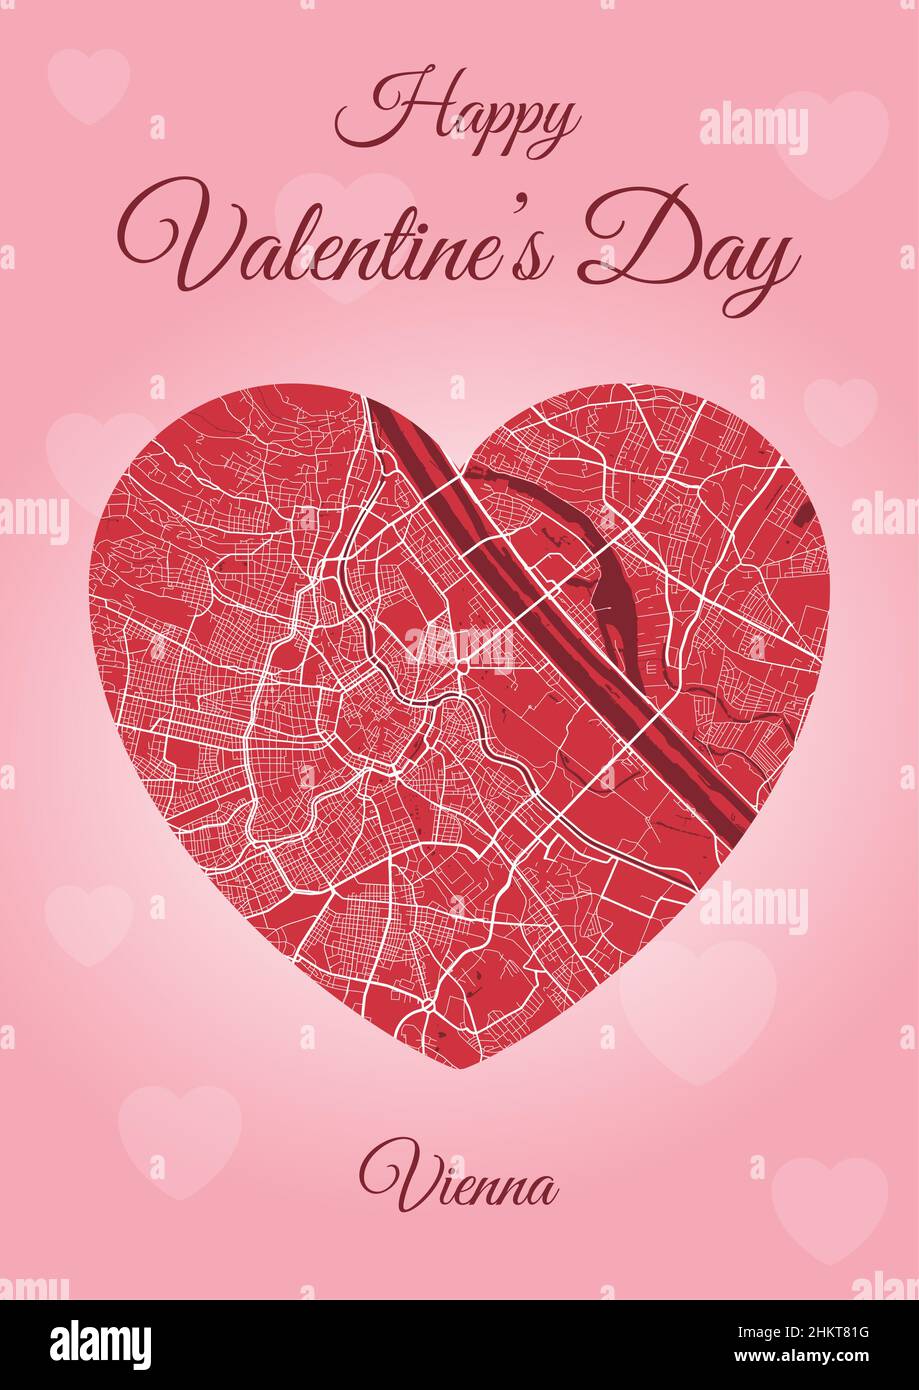 Da Vienna con carta d'amore, mappa della città a forma di cuore. Immagine vettoriale verticale A4 rosa e rosso. Amore città viaggio paesaggio urbano. Illustrazione Vettoriale